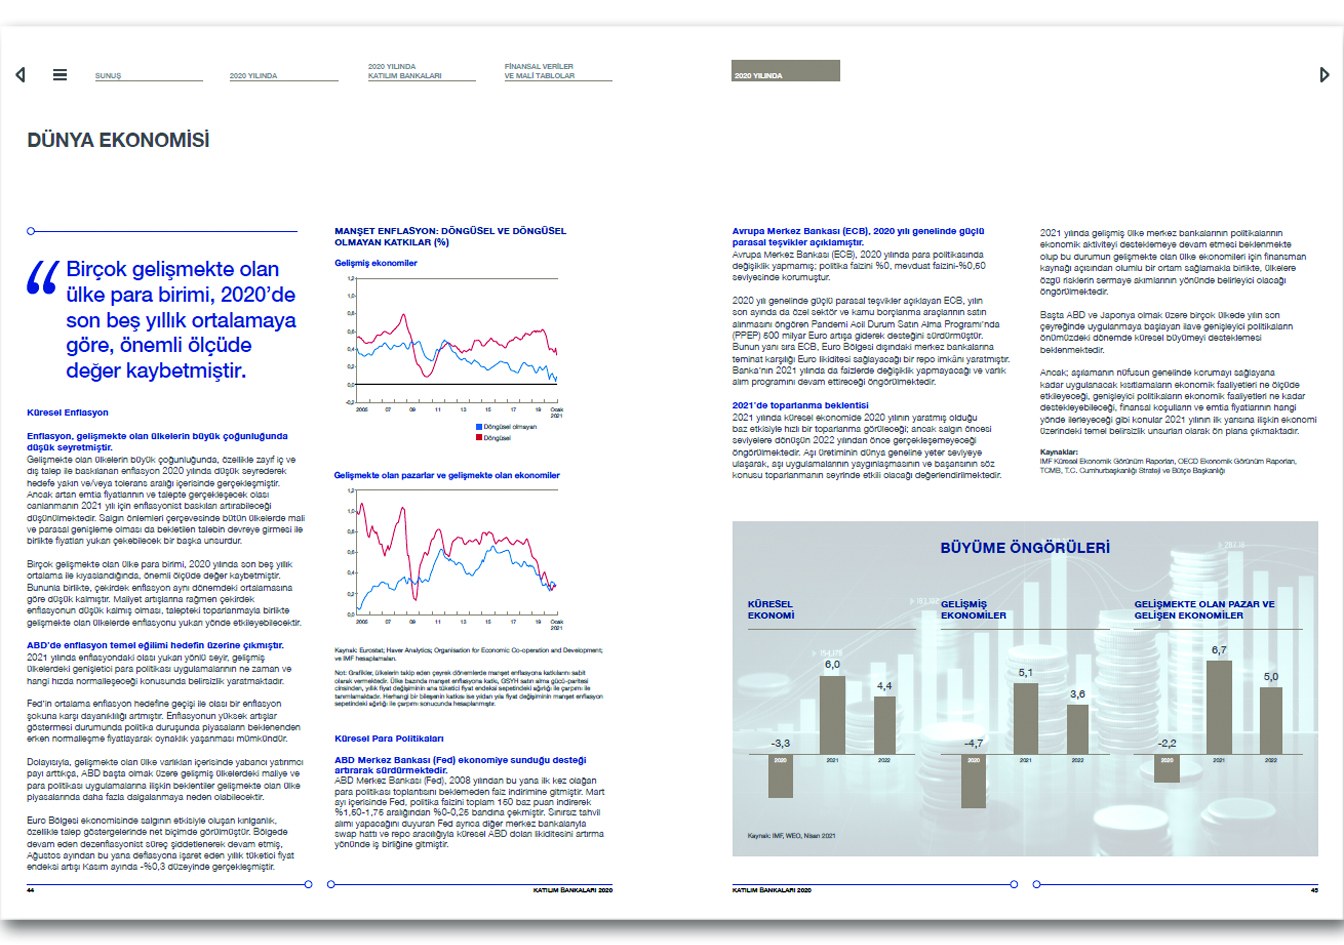 TÜRKİYE KATILIM BANKALARI BİRLİĞİ / 2020 Faaliyet Raporu / 2020 Annual Report